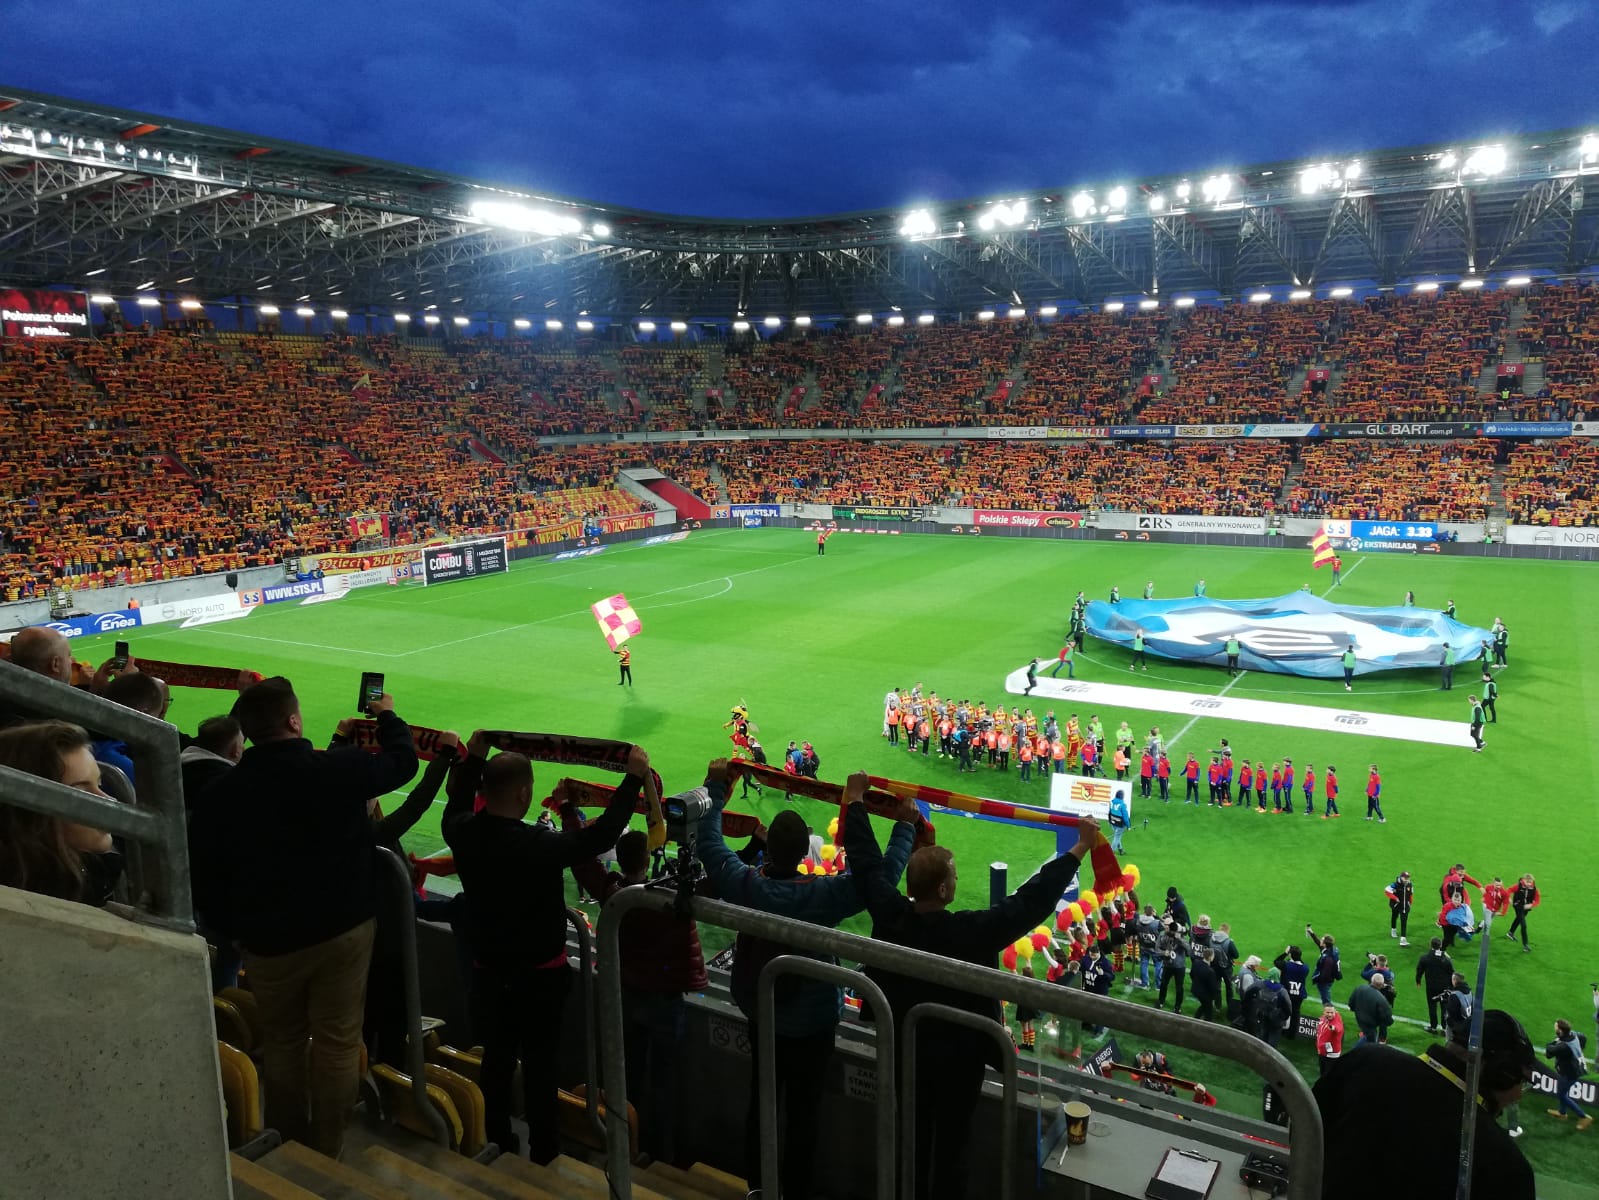 Stadion Miejski w Białymstoku, obiekt jest podświetlony. Na trybunach są kibice, którzy trzymają w górze klubowe szaliki